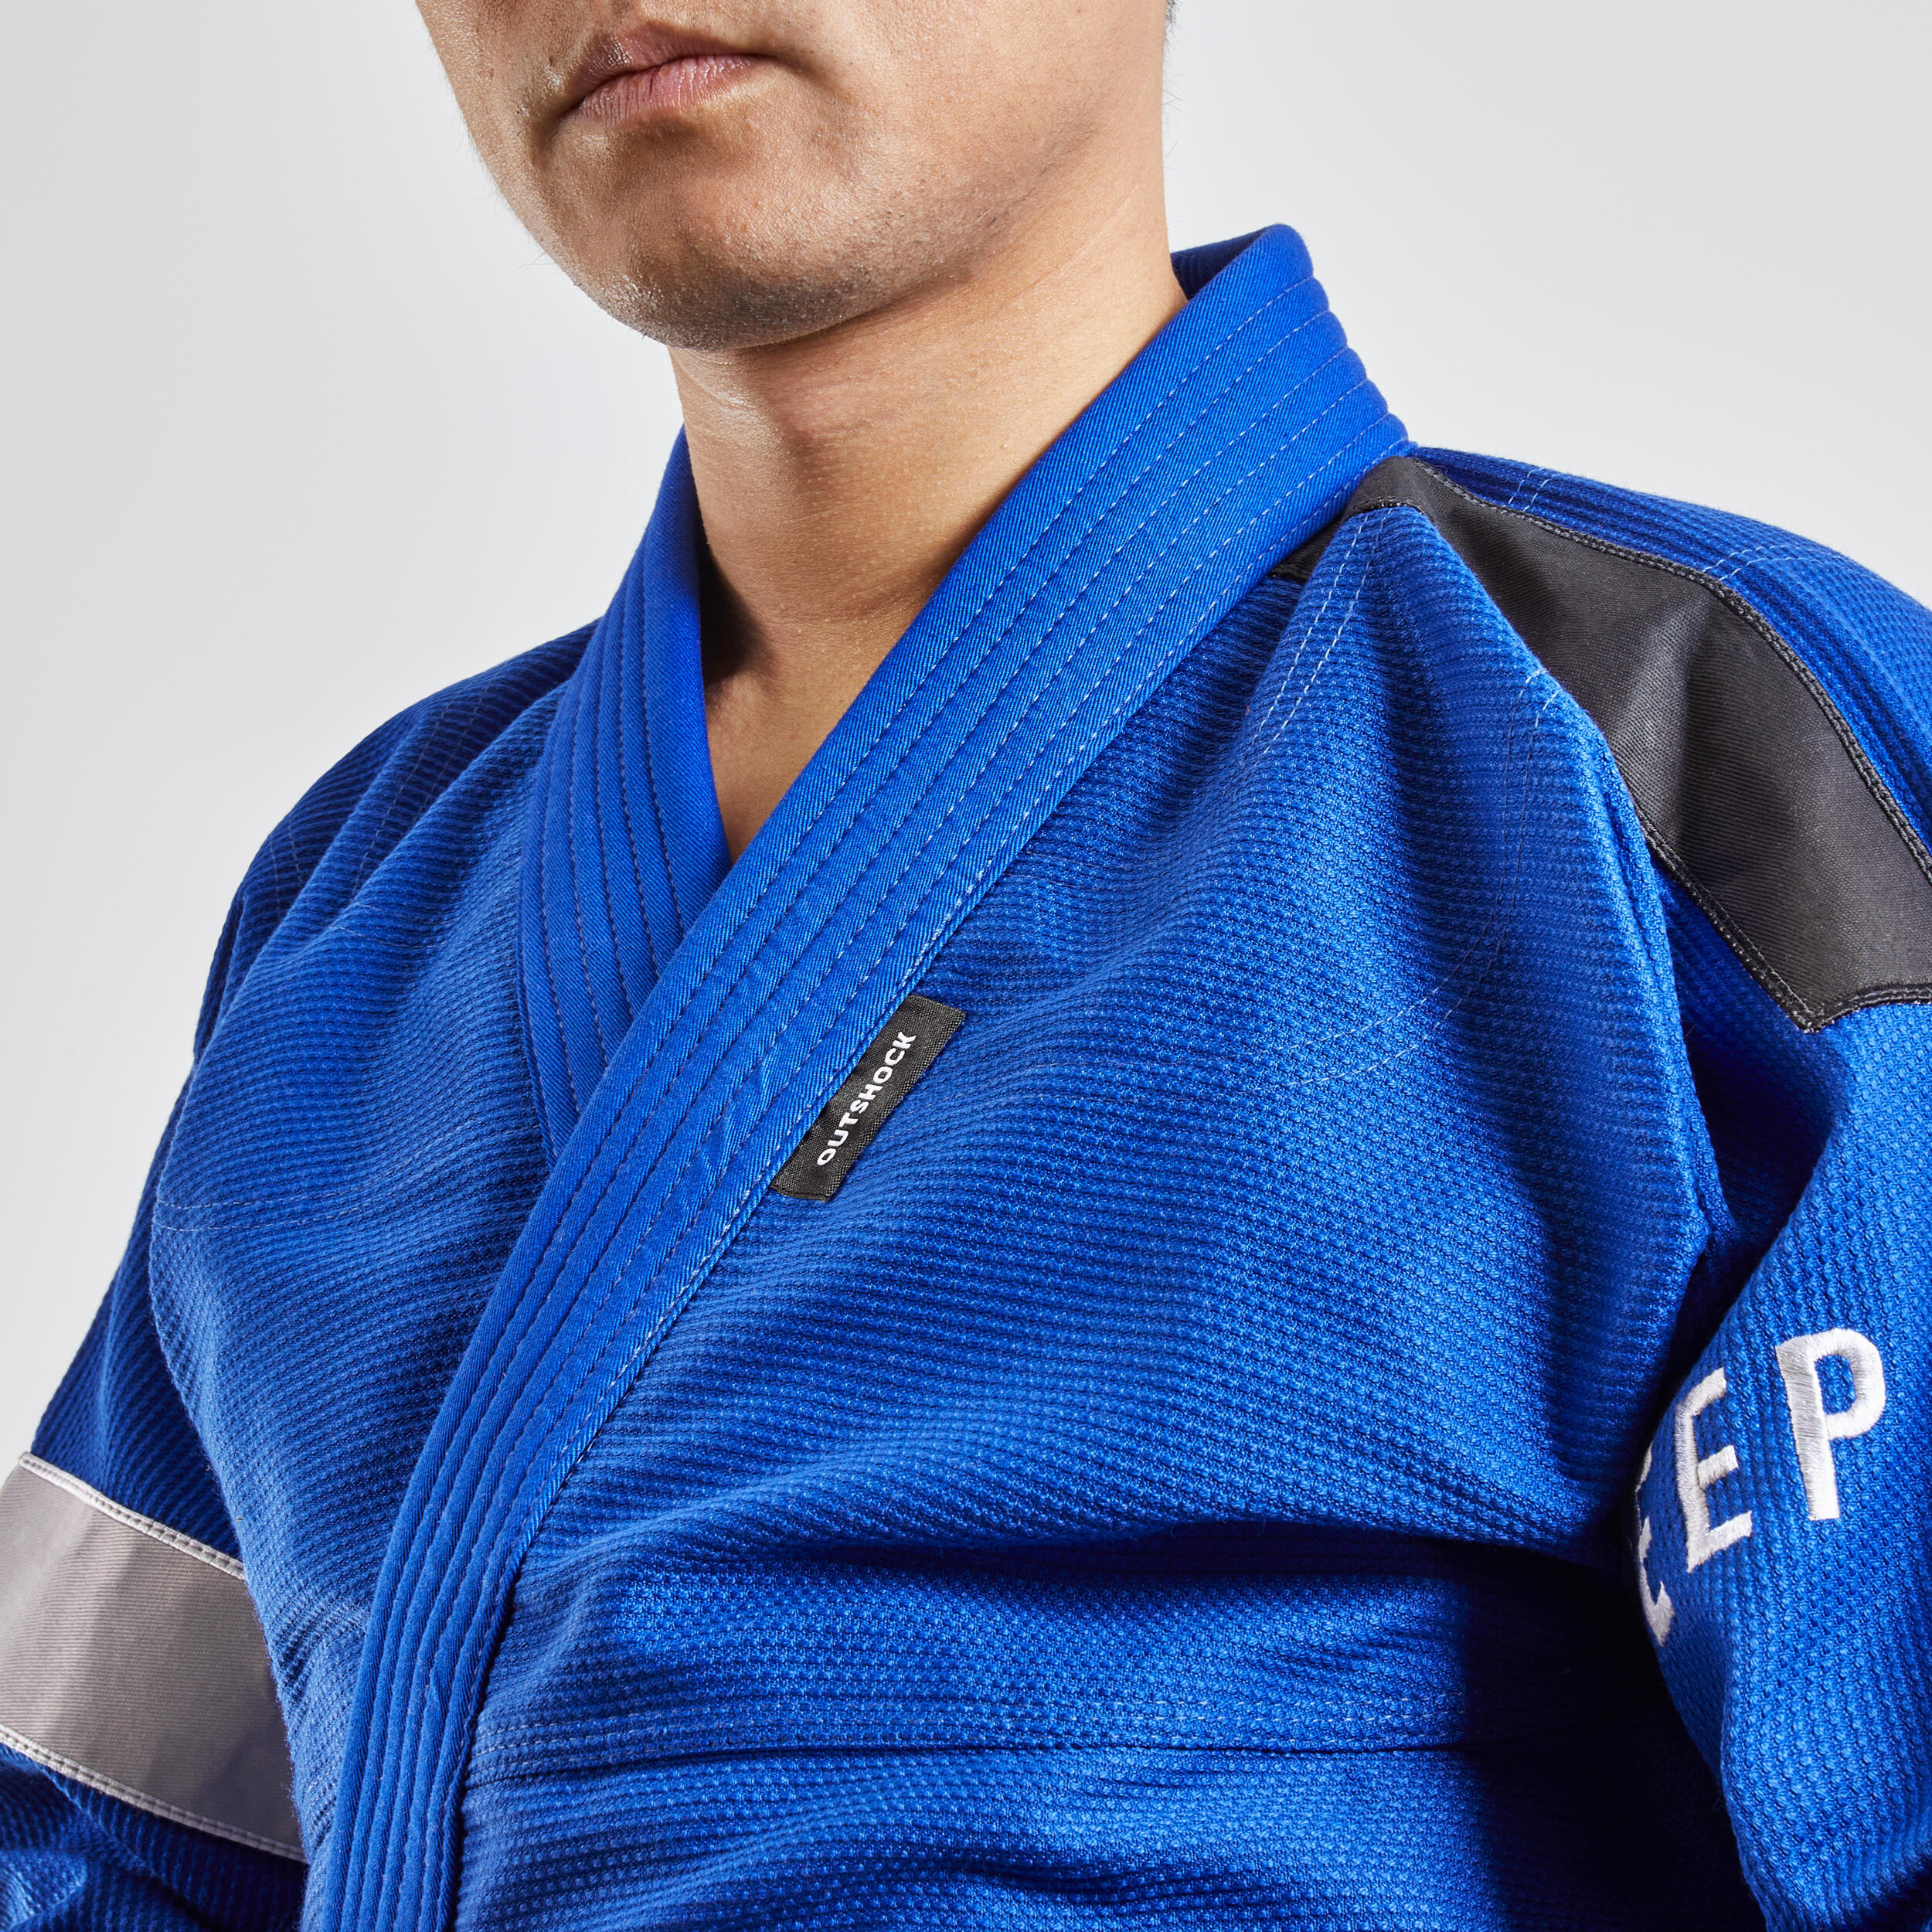 500 Brazilian Jiu-Jitsu Adult Uniform - Blue 7/9